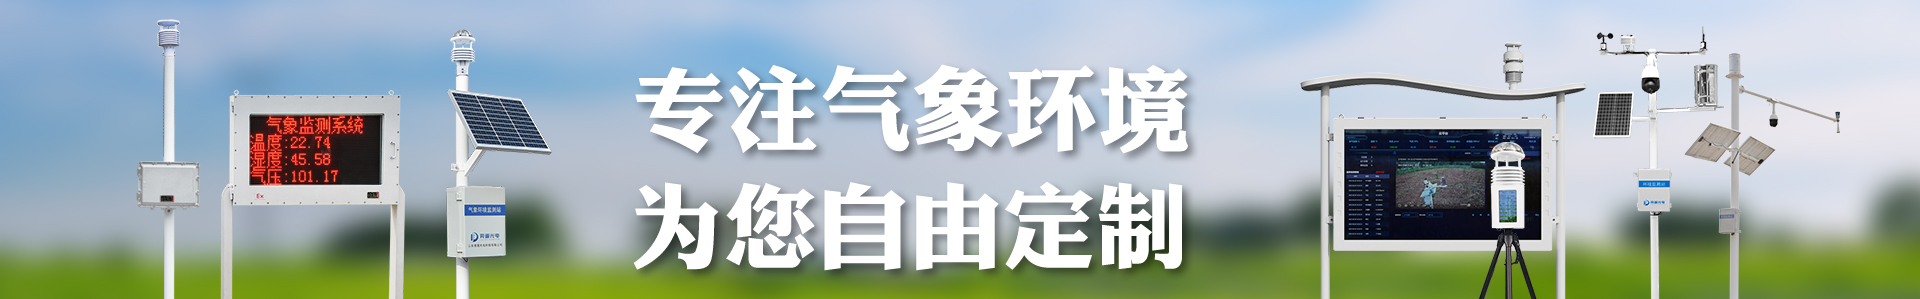 微光夜视仪-微光夜视设备-自动气象站-小型气象站-防爆气象站-光伏气象站-开元旗牌·(中国)官方网站